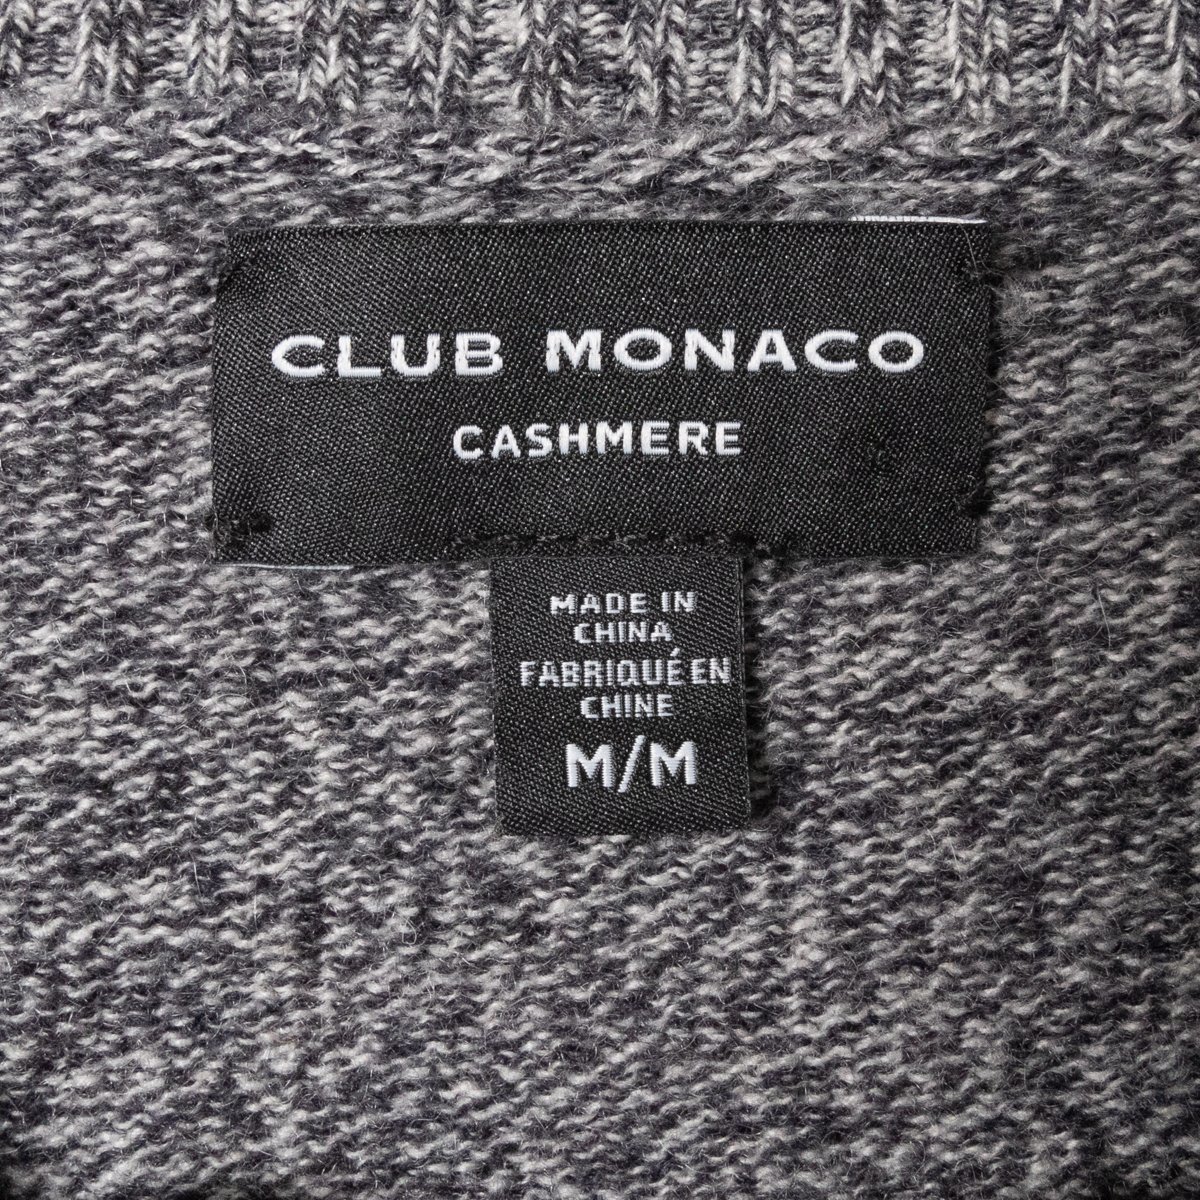 CLUB MONACO クラブモナコ メンズ 男性 カシミアニット セーター グレー Mサイズ サイドボタン シンプル カジュアル キレイめ 上品 着回し_画像2